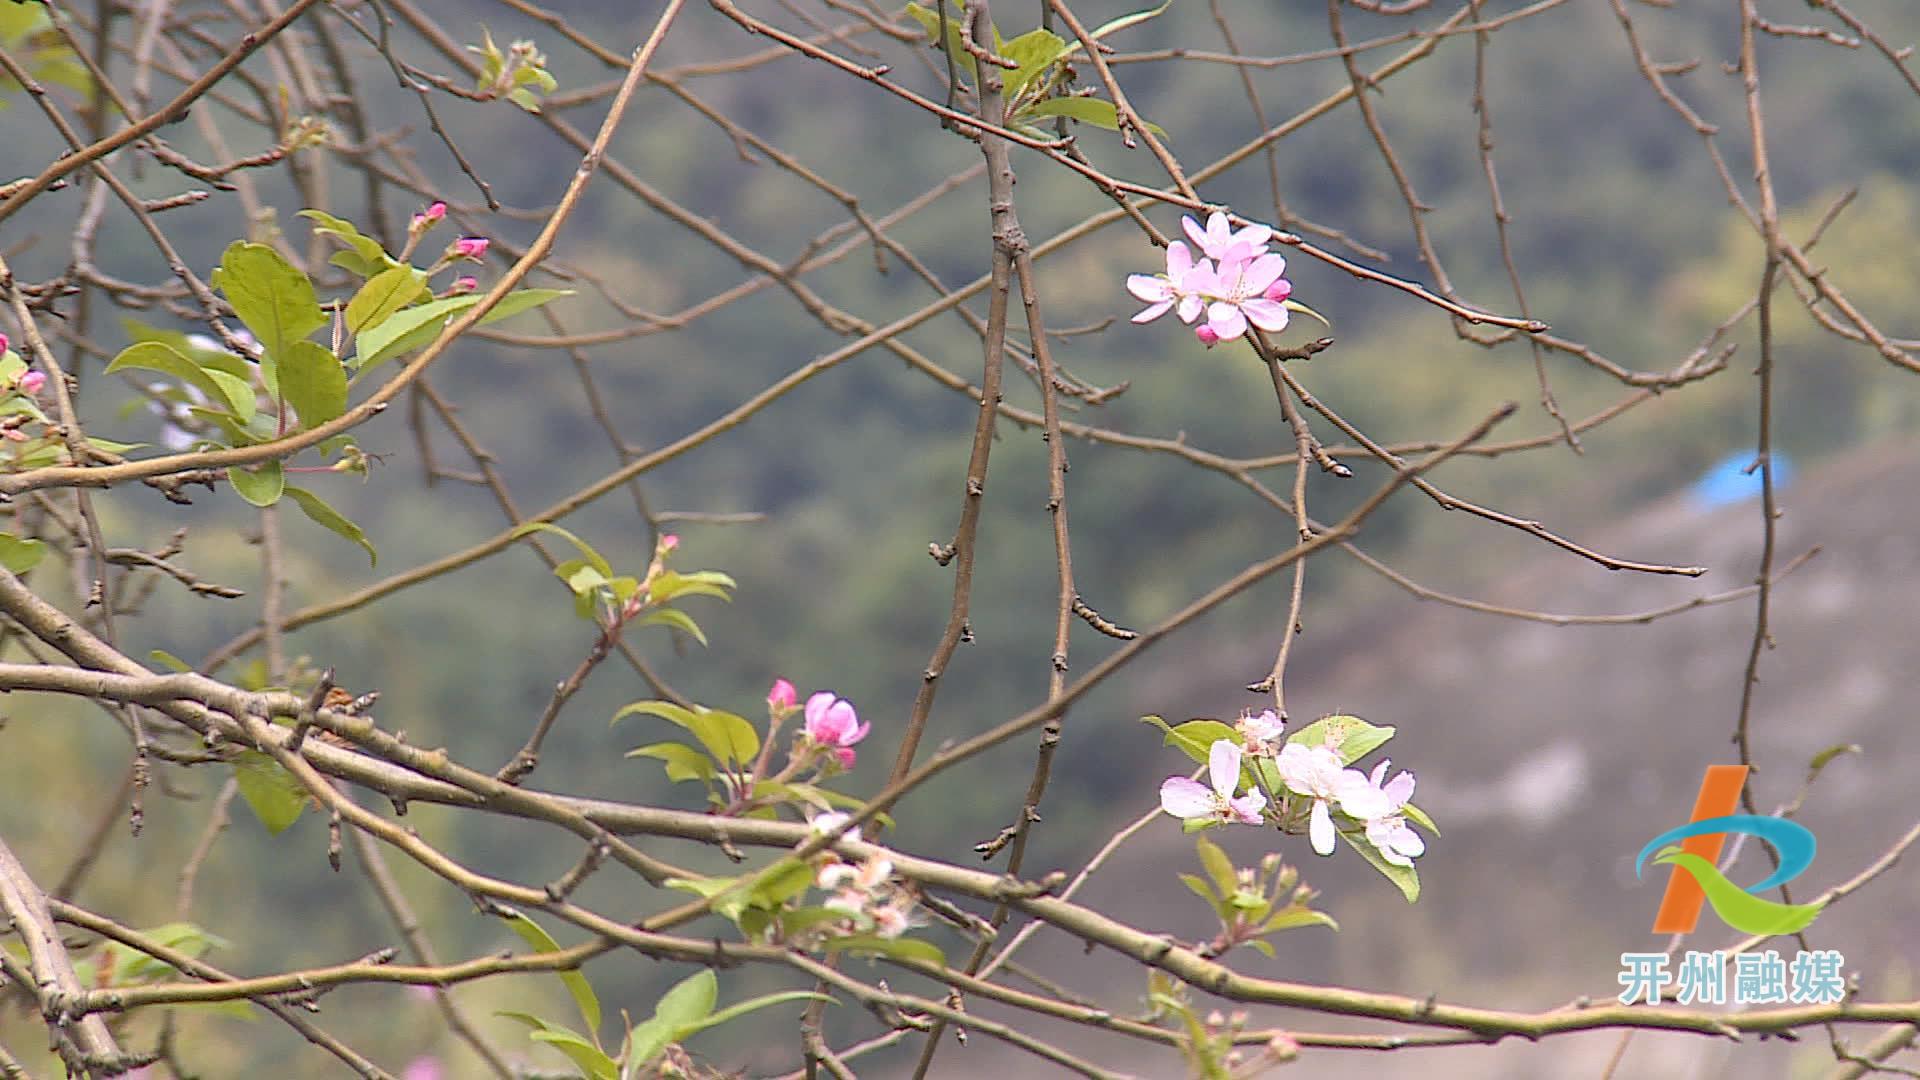 滨湖公园的多种花卉错季开放 形成了现在是春天的假象！‘NG官网APP下载’(图9)